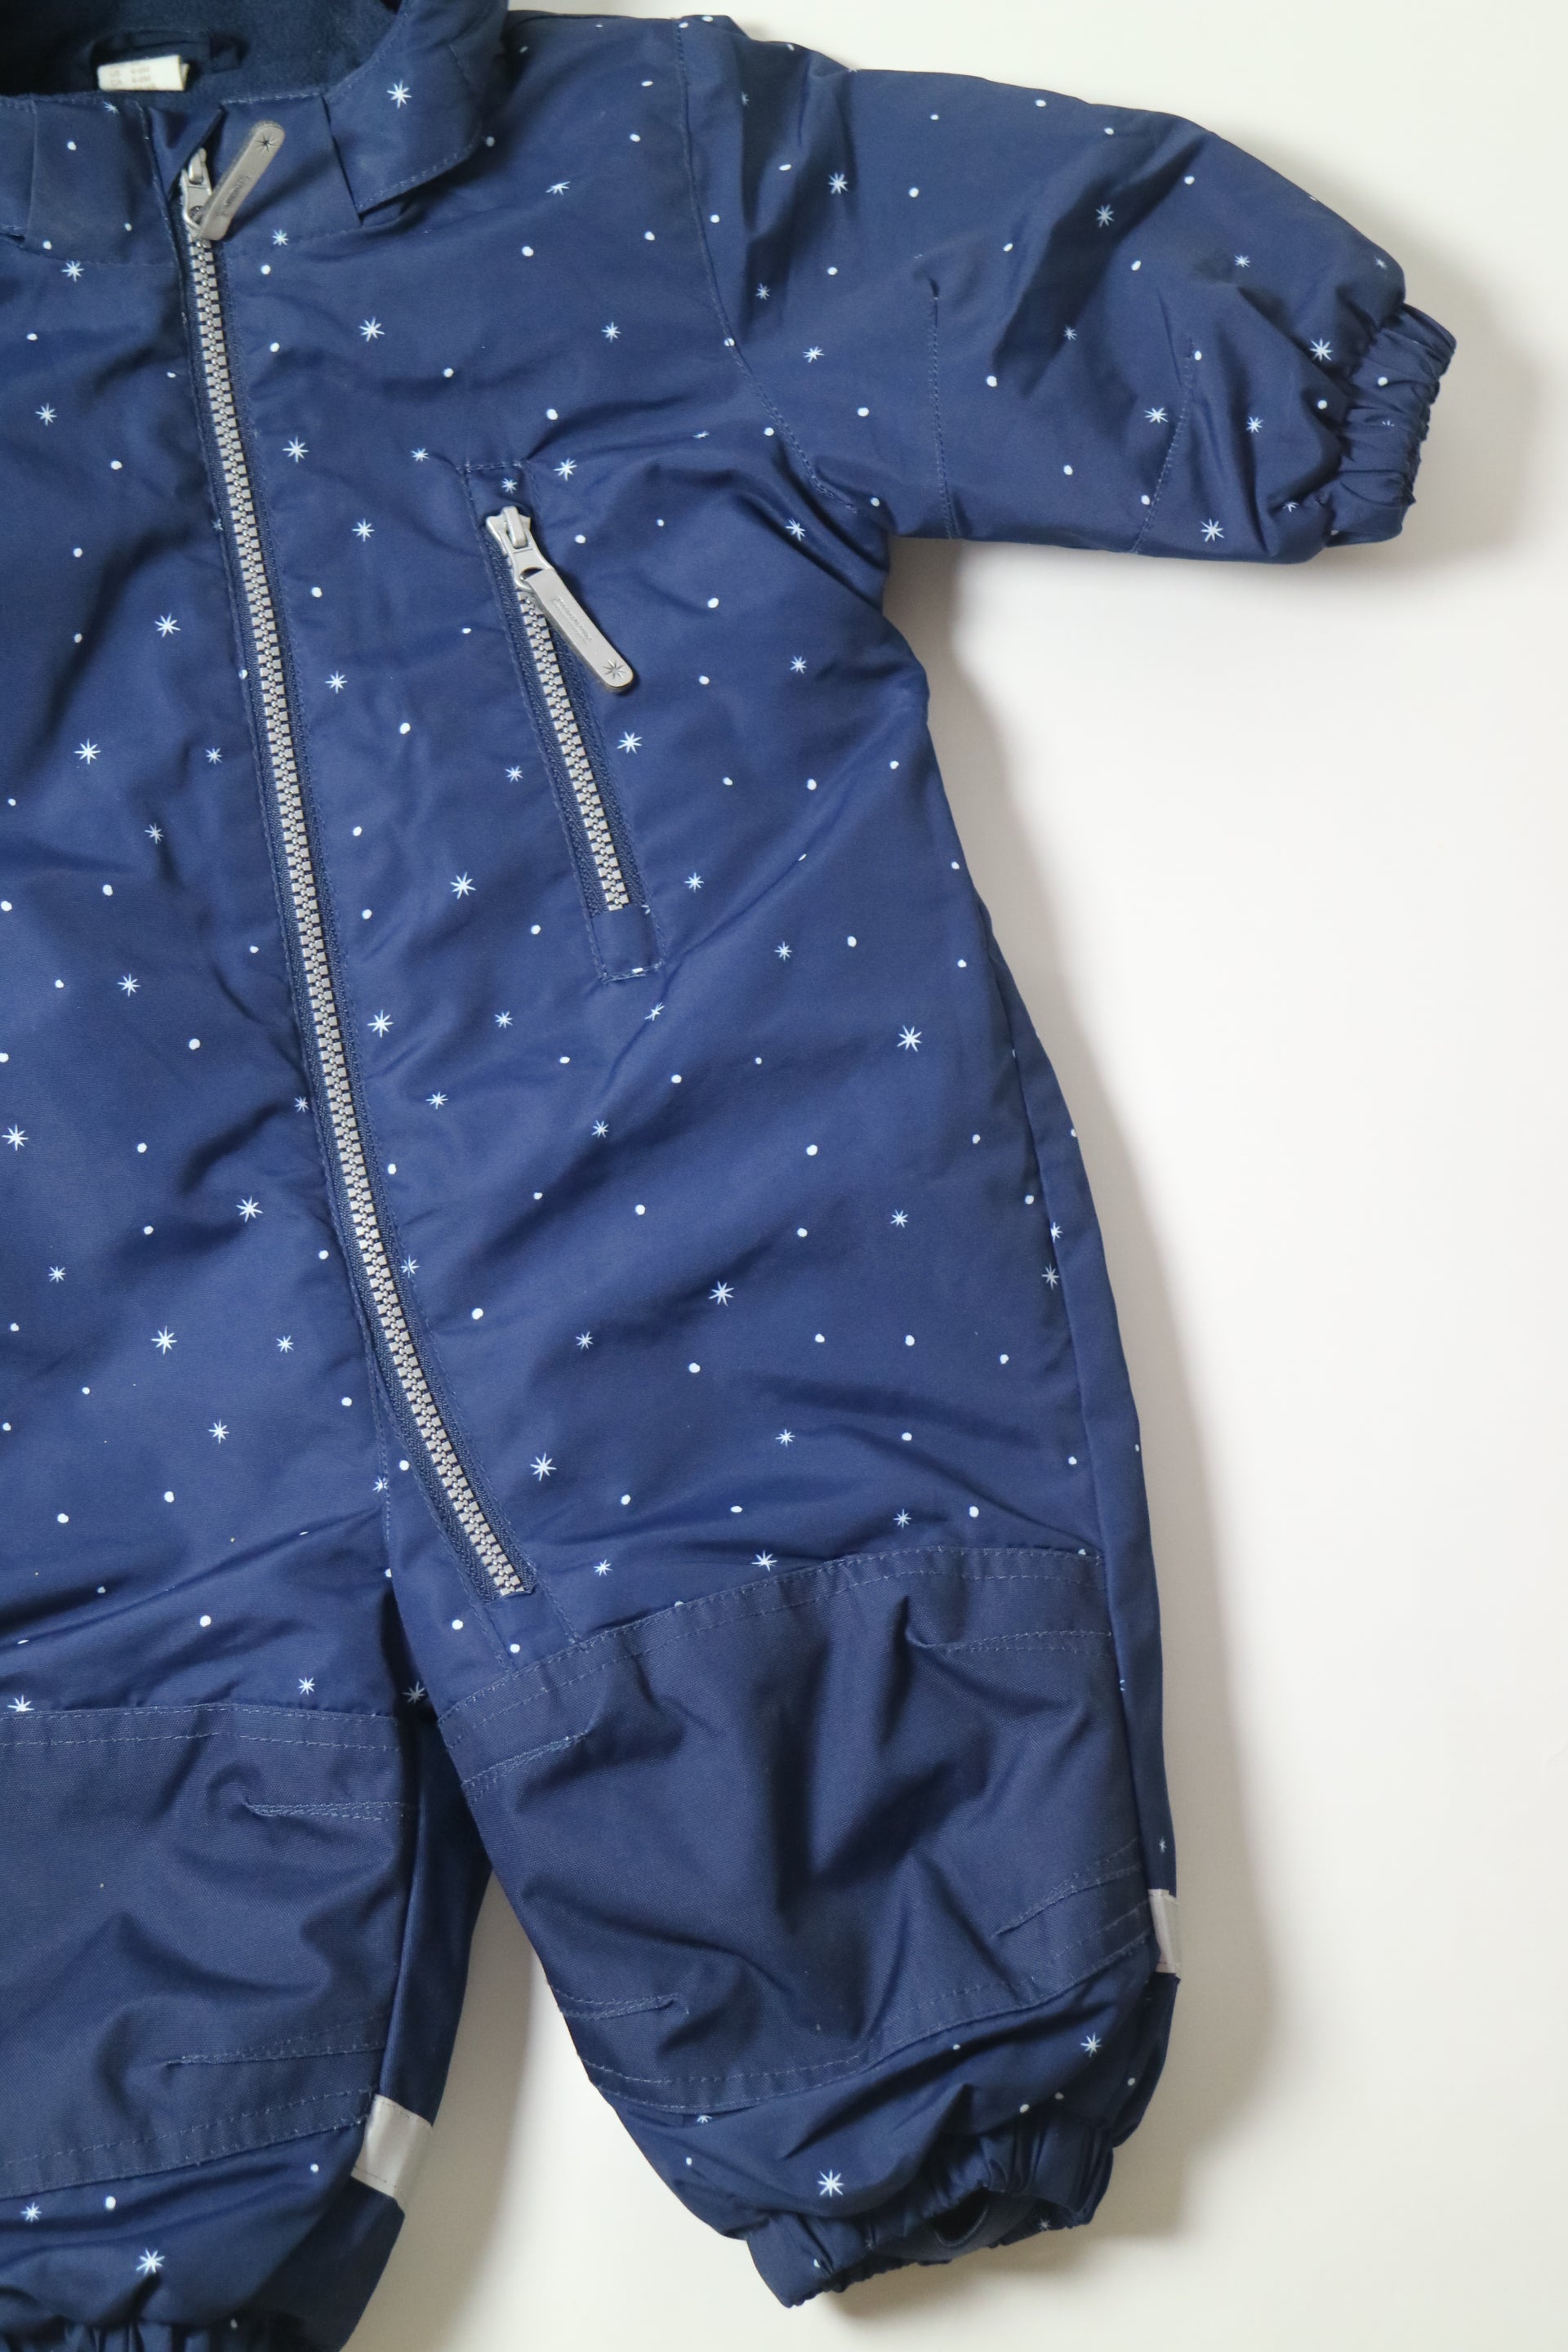 Marinblå vinteroverall med vita stjärnor och prickar från H&M